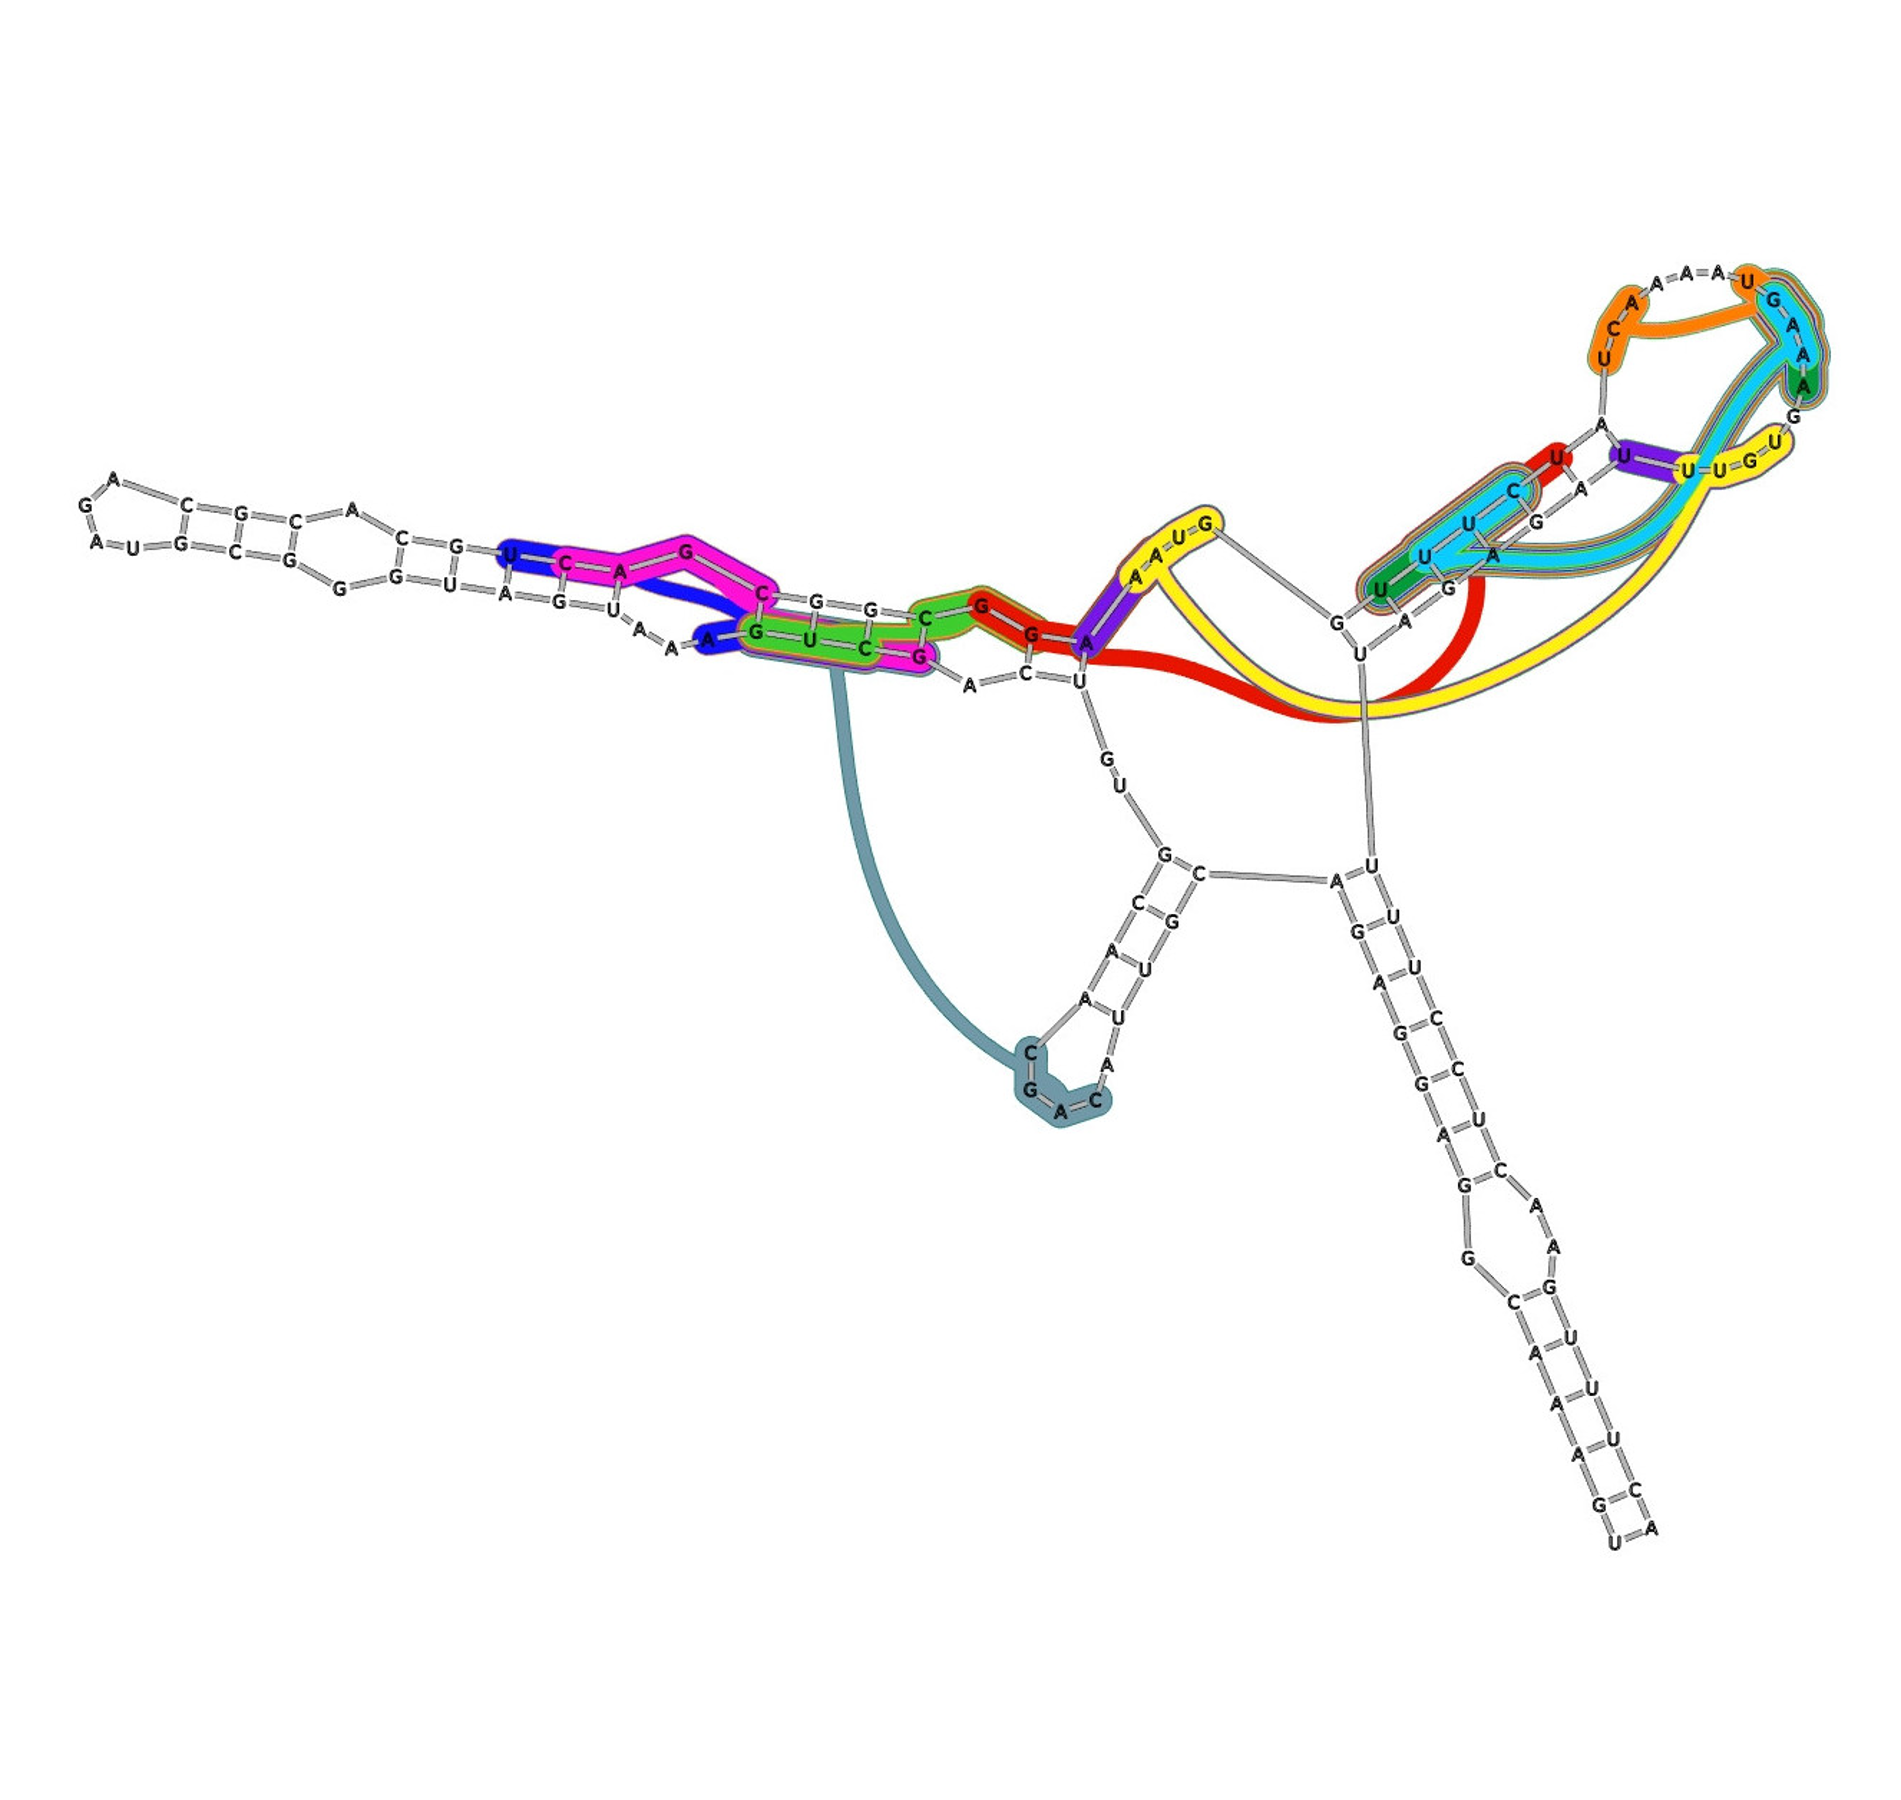 RNA-binding